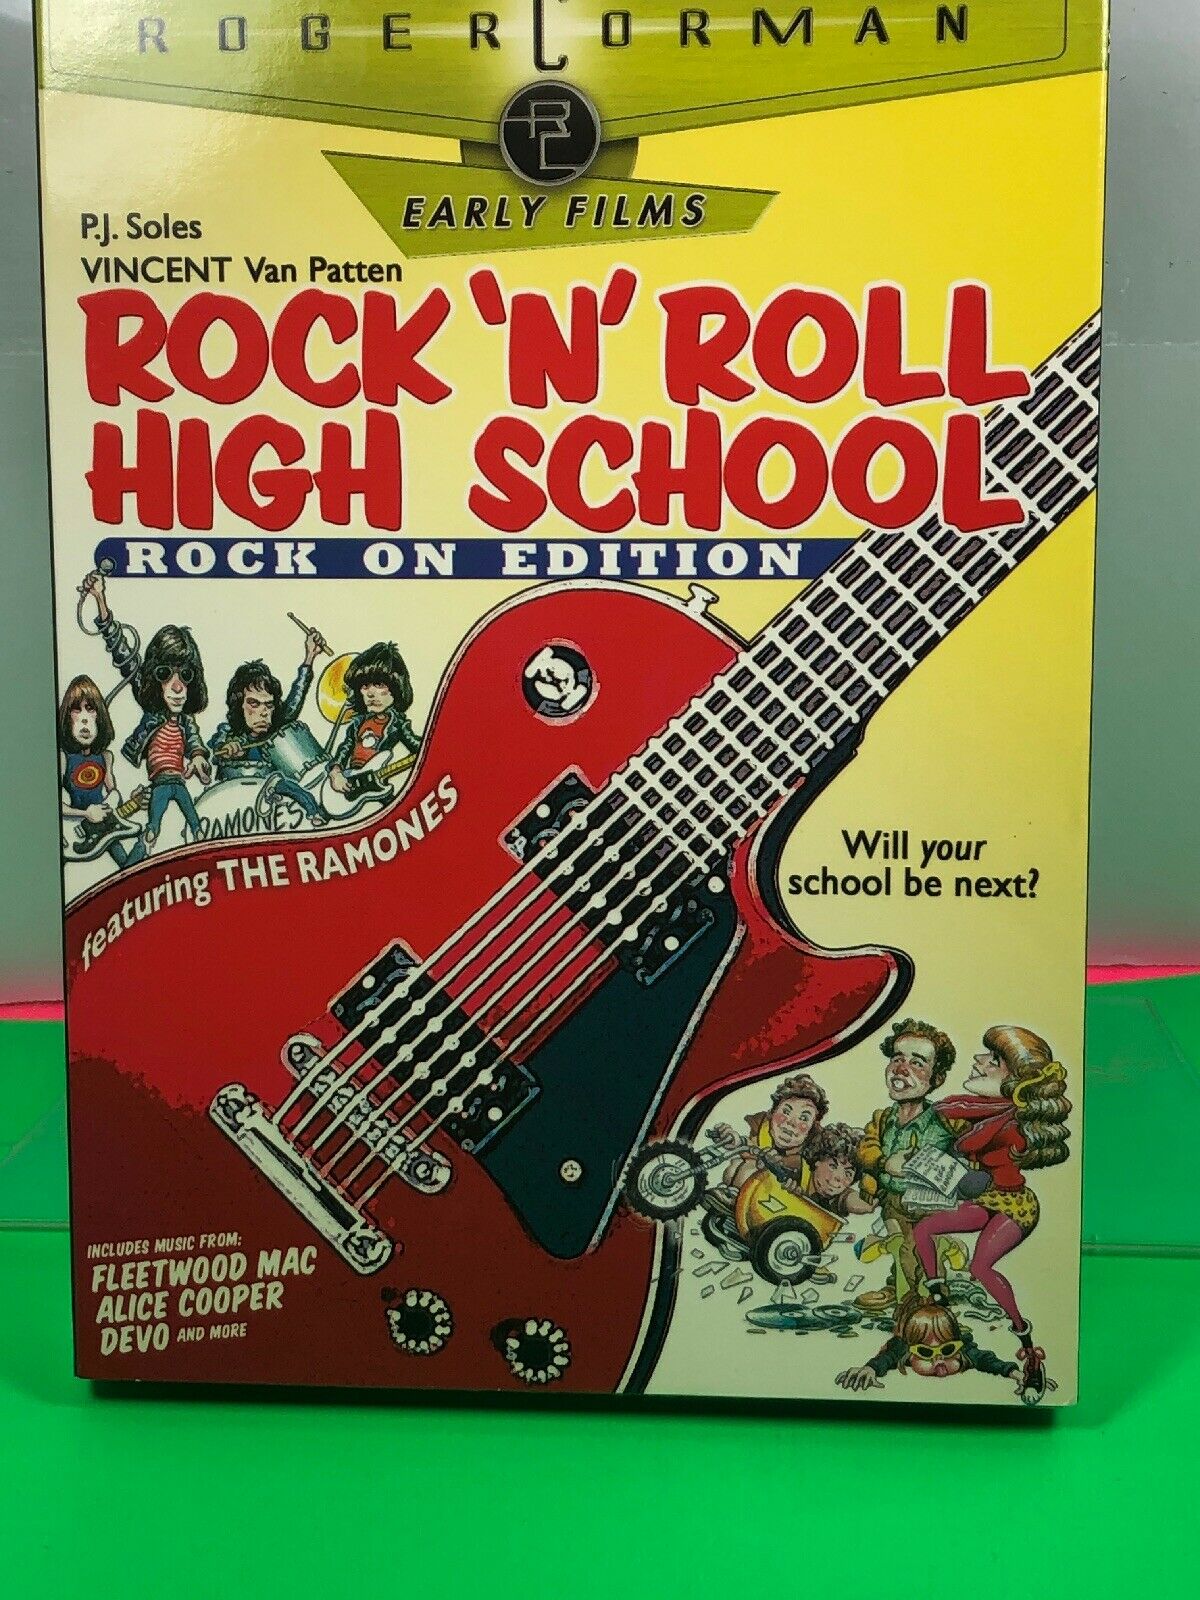 Слушать песни рок ролла. Рок-н-ролл. Высшая школа рок-н-ролла. Высшая школа рока. Рок ролл.